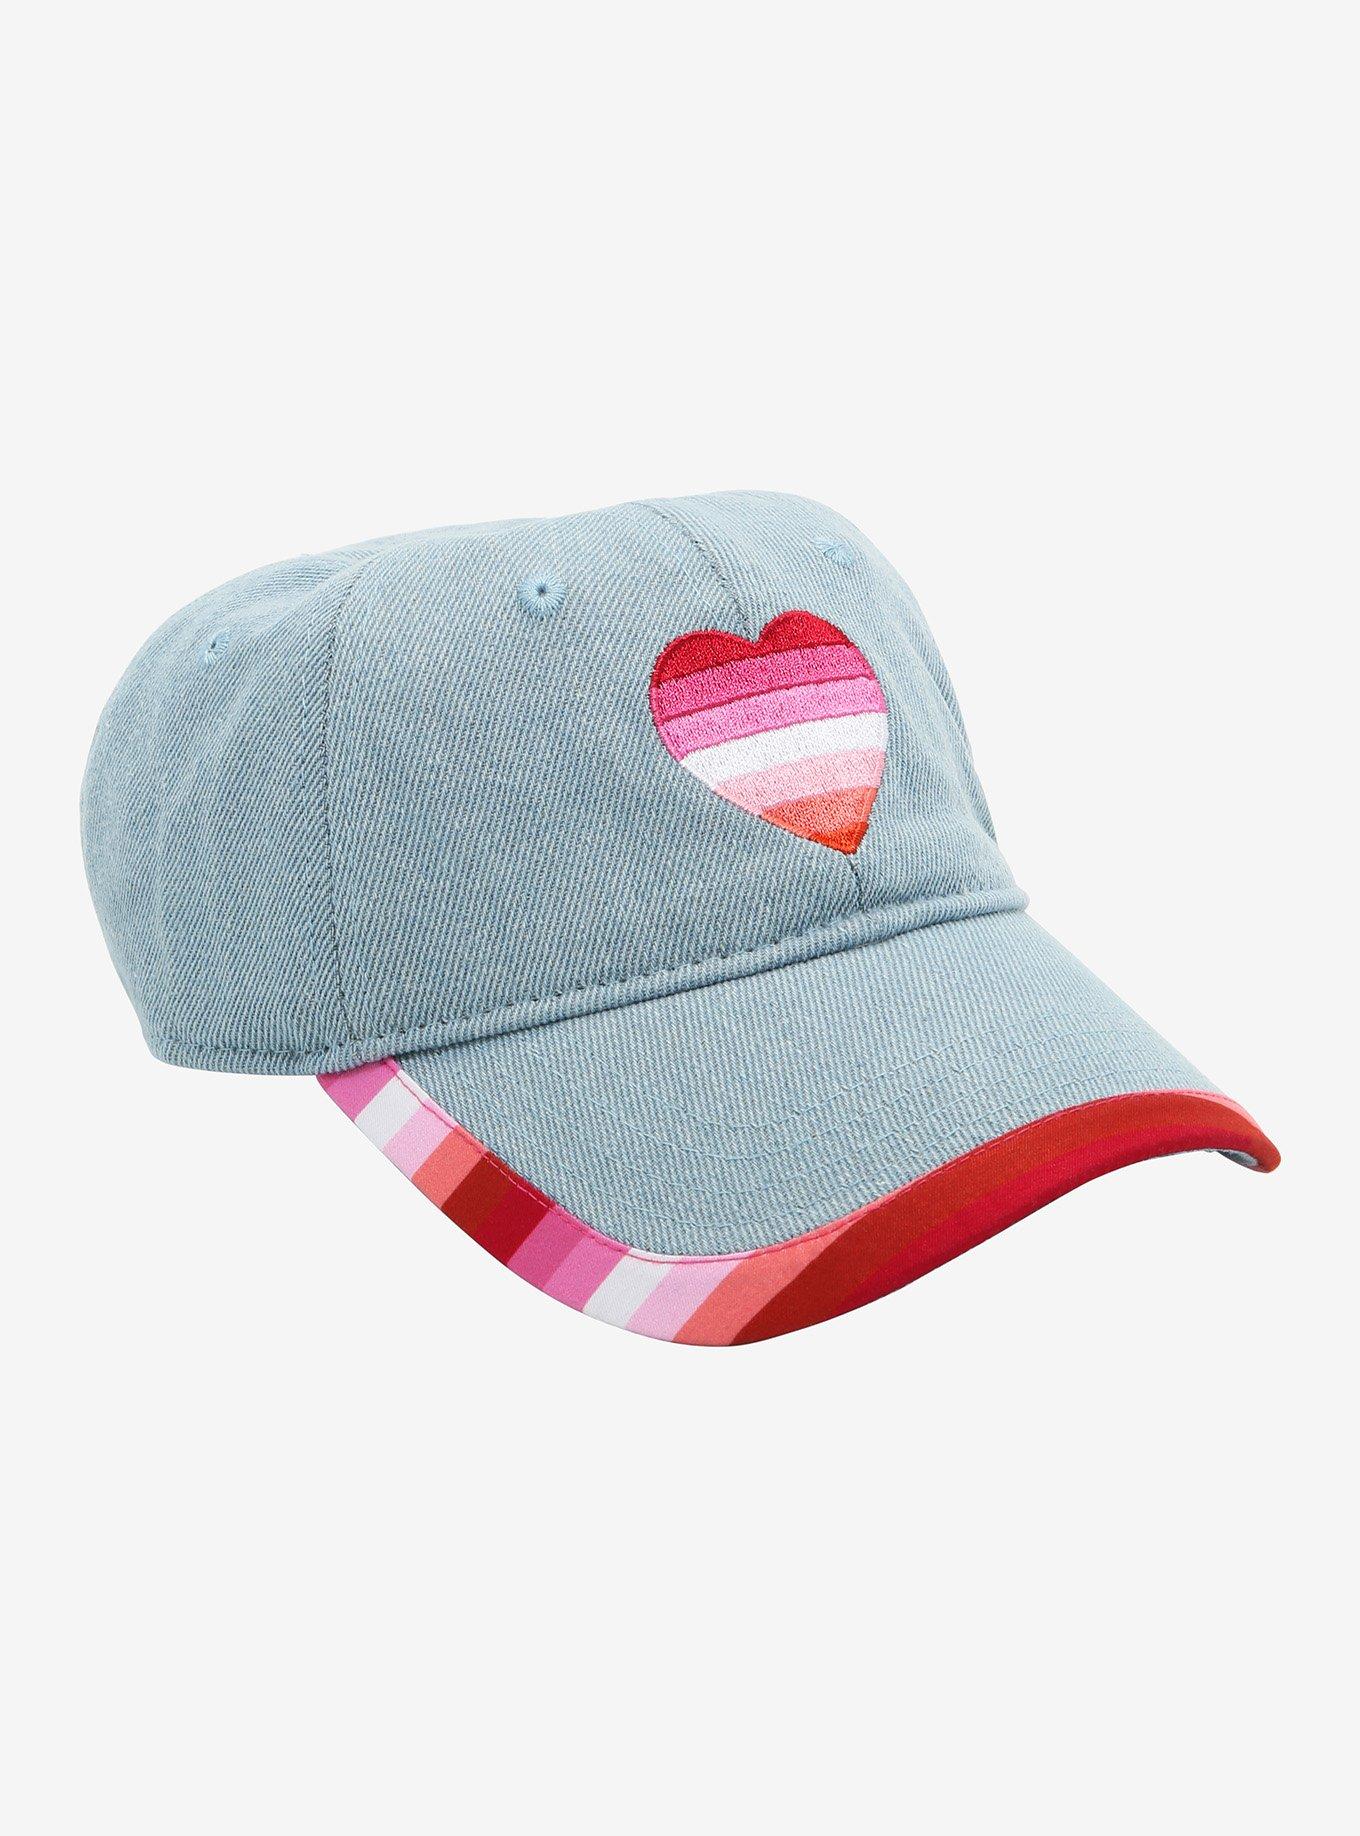 Lesbian Pride Flag Heart Denim Cap, , hi-res